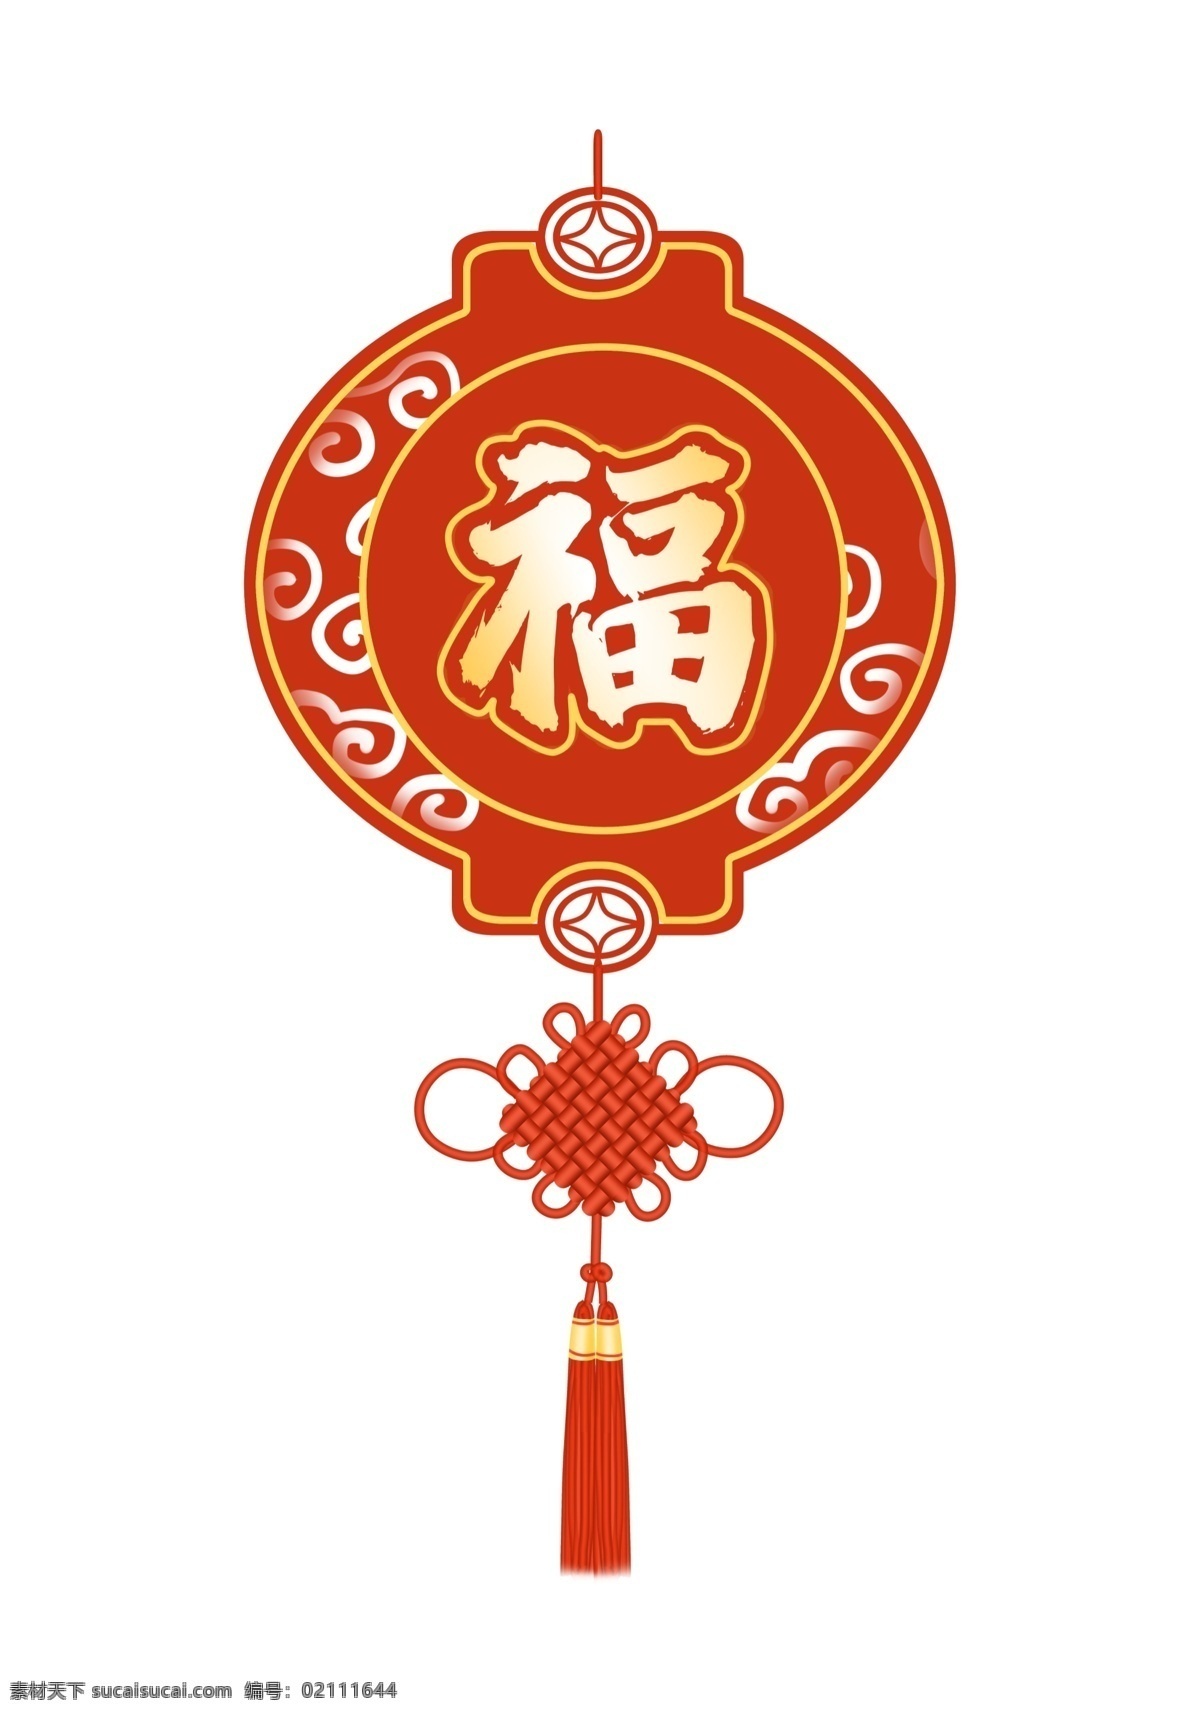 原创 手绘 中国结 福字 挂件 装饰 节日挂件 装饰图案 ps素材